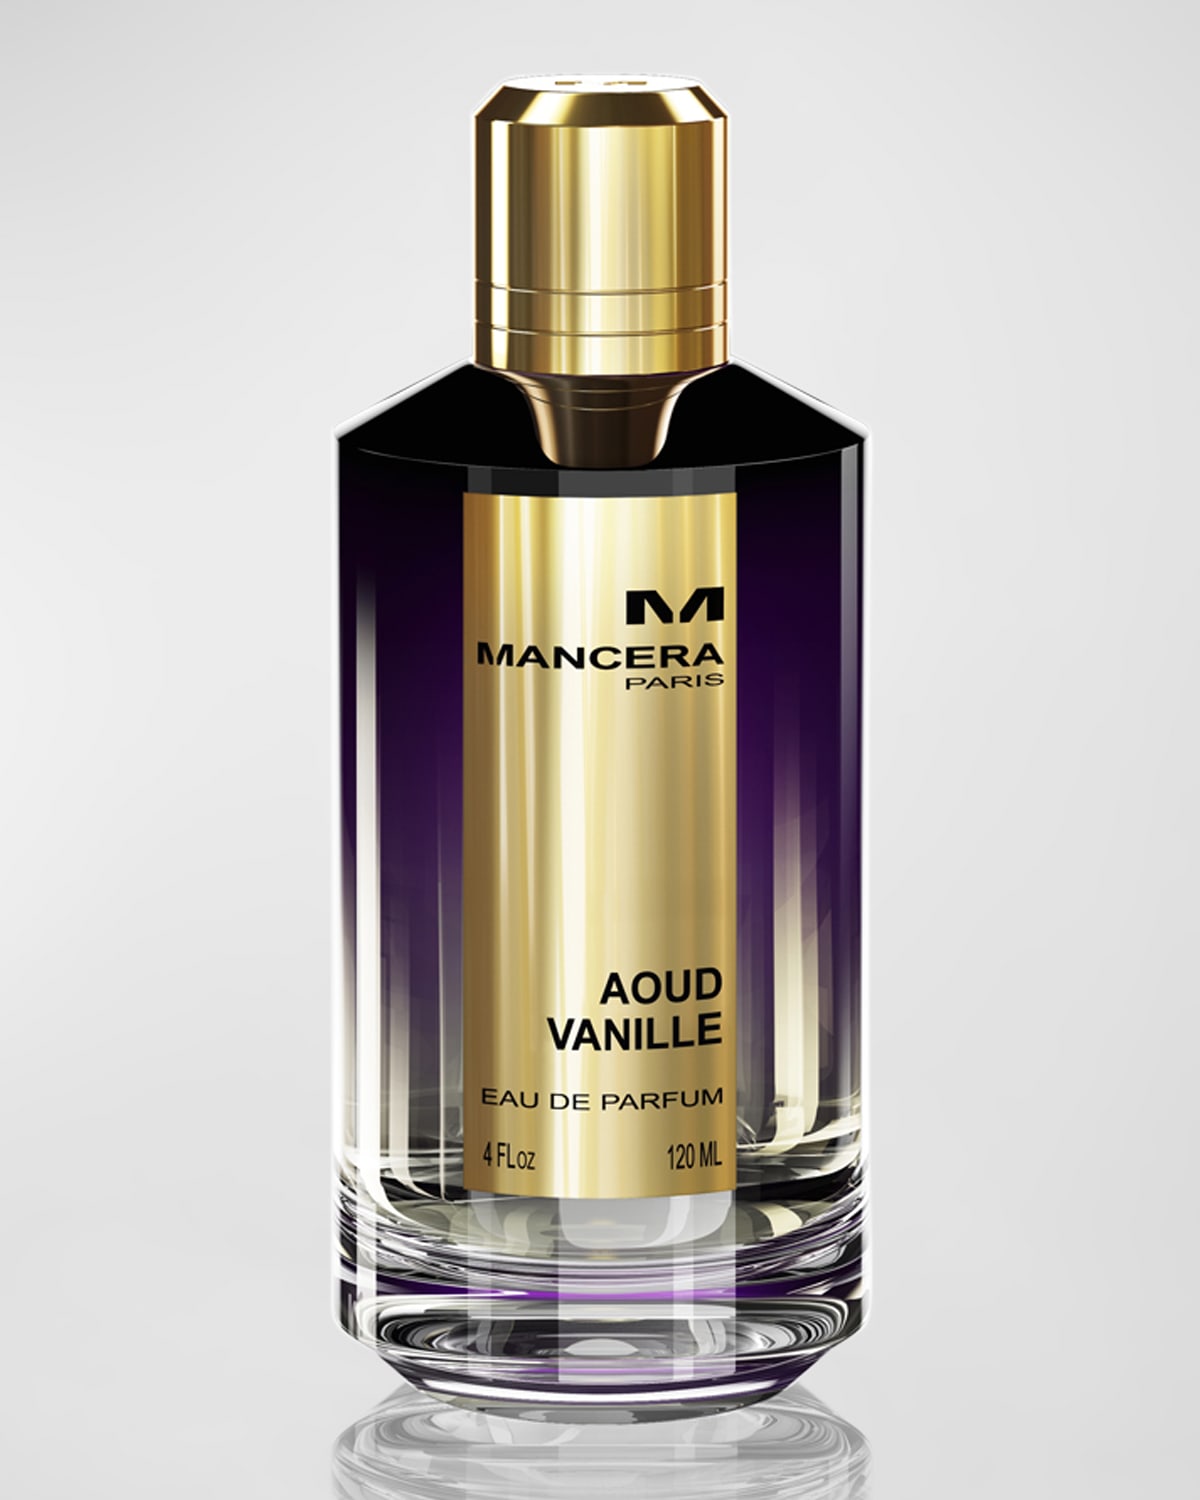 Aoud Vanille Eau de Parfum, 4 oz.